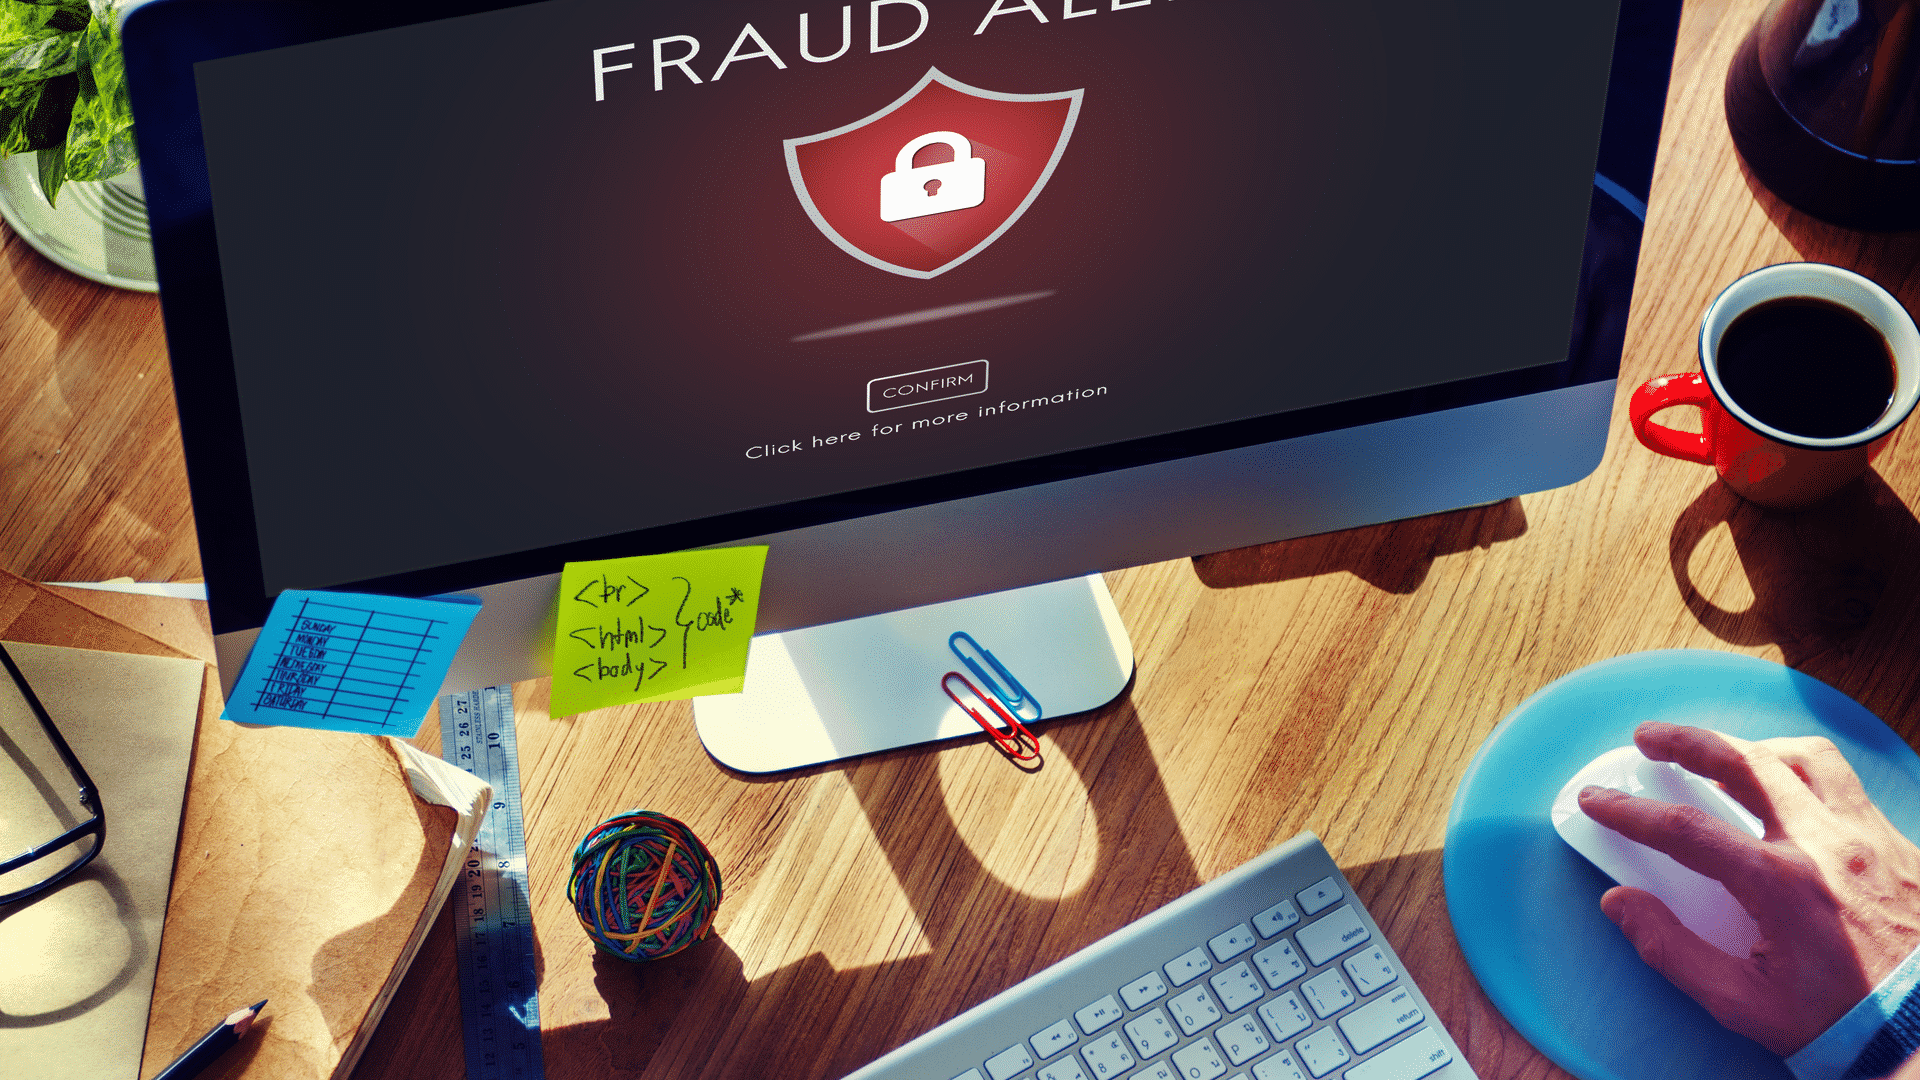 Los estudios muestran un fuerte aumento en los intentos de fraude publicitario y el tráfico falso